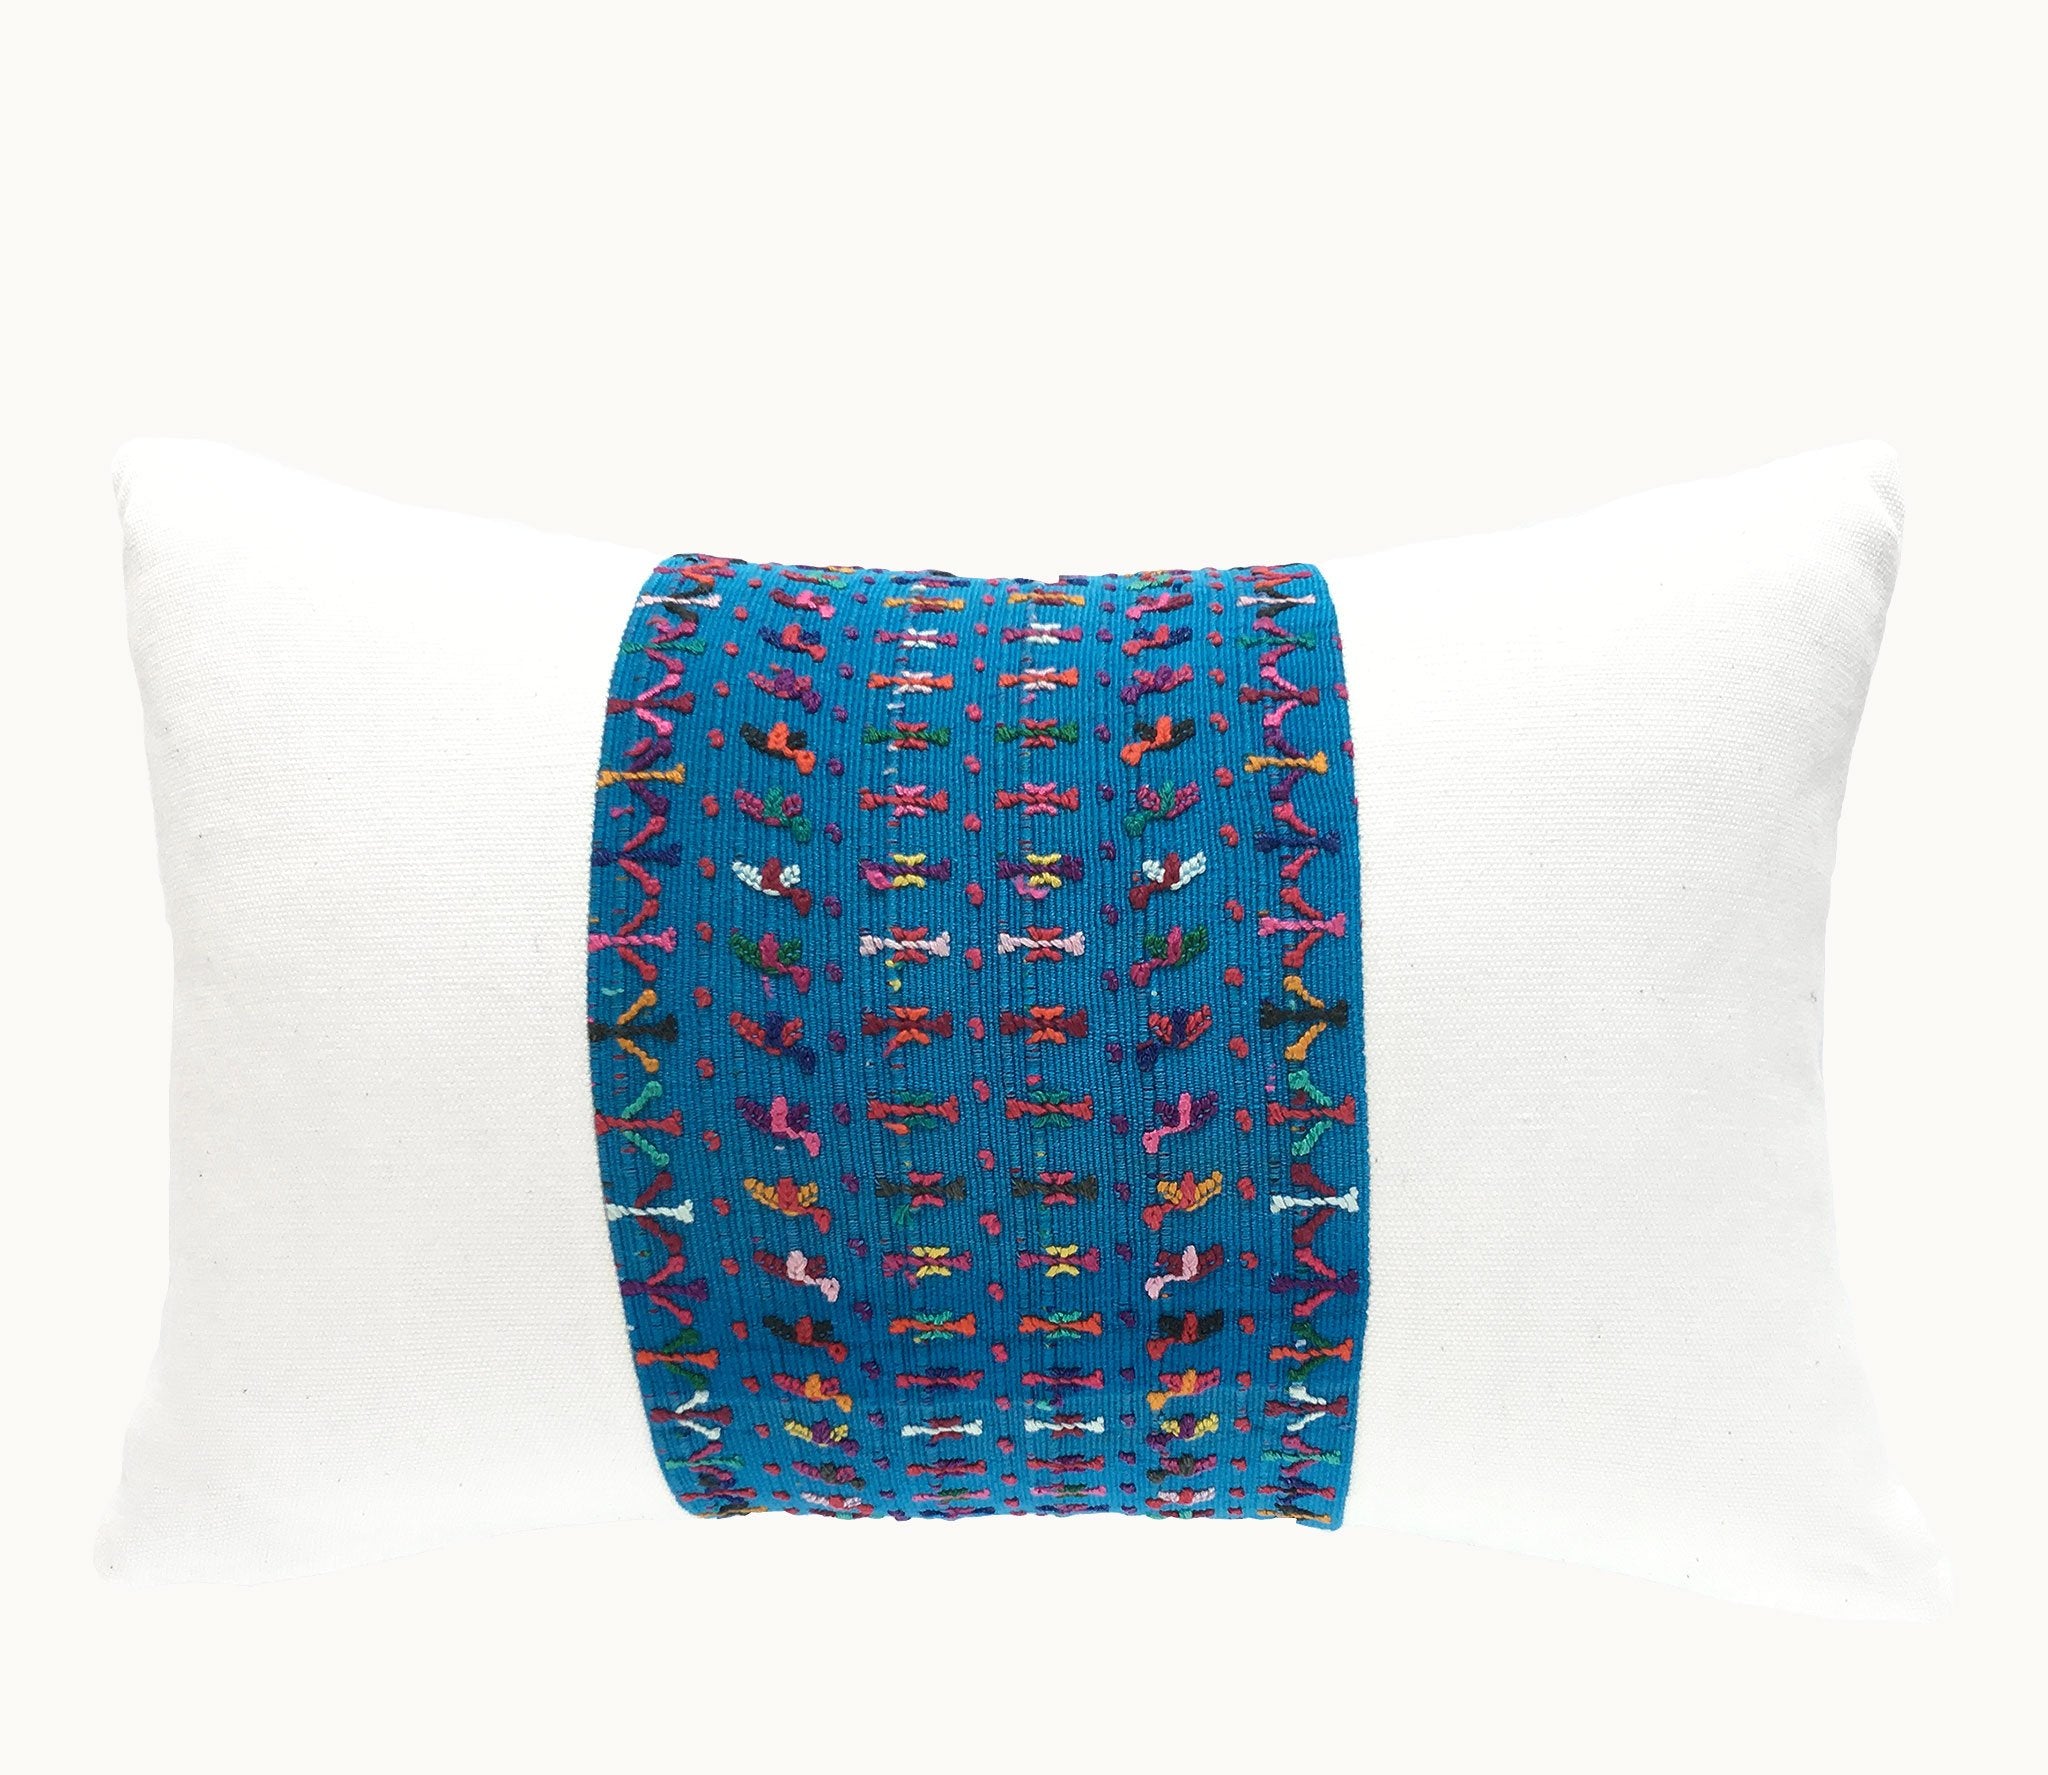 Guatemalan Huipil Pillow, blue and white lumbar cushion from San Lucas